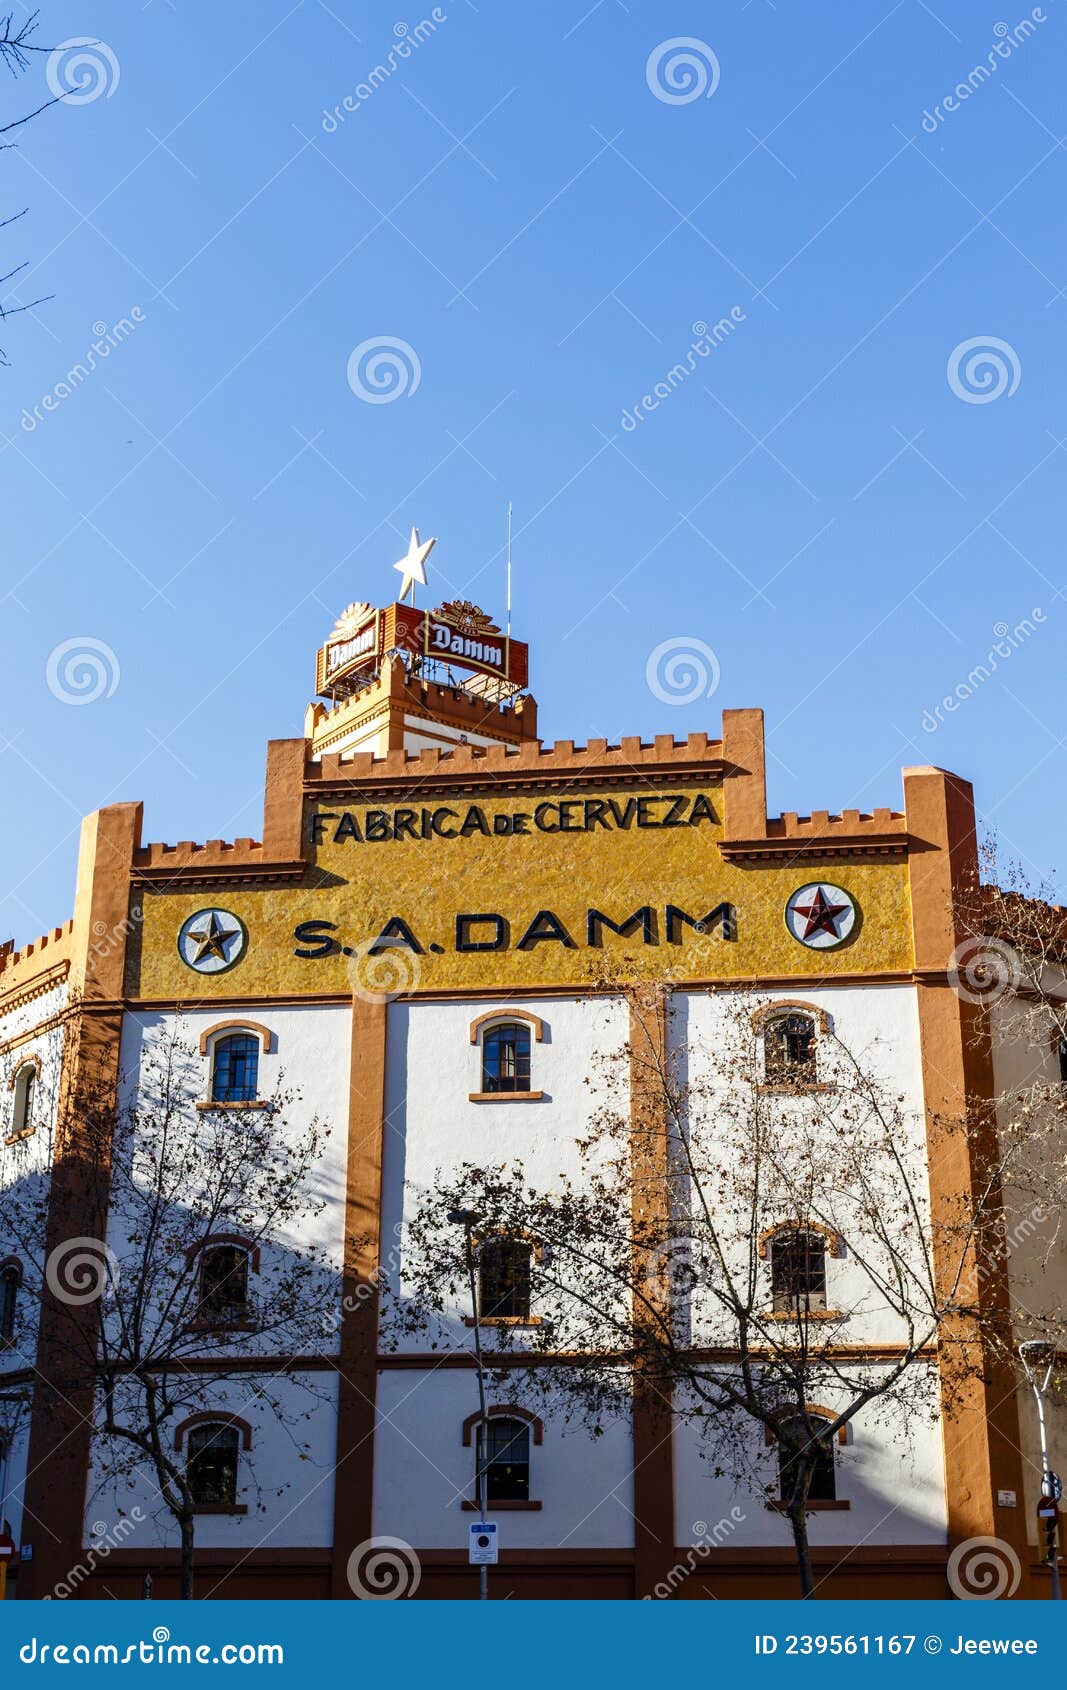 facade of the estrella damm beer brewery in el eixample in barcelona, catalonia, spain, europe